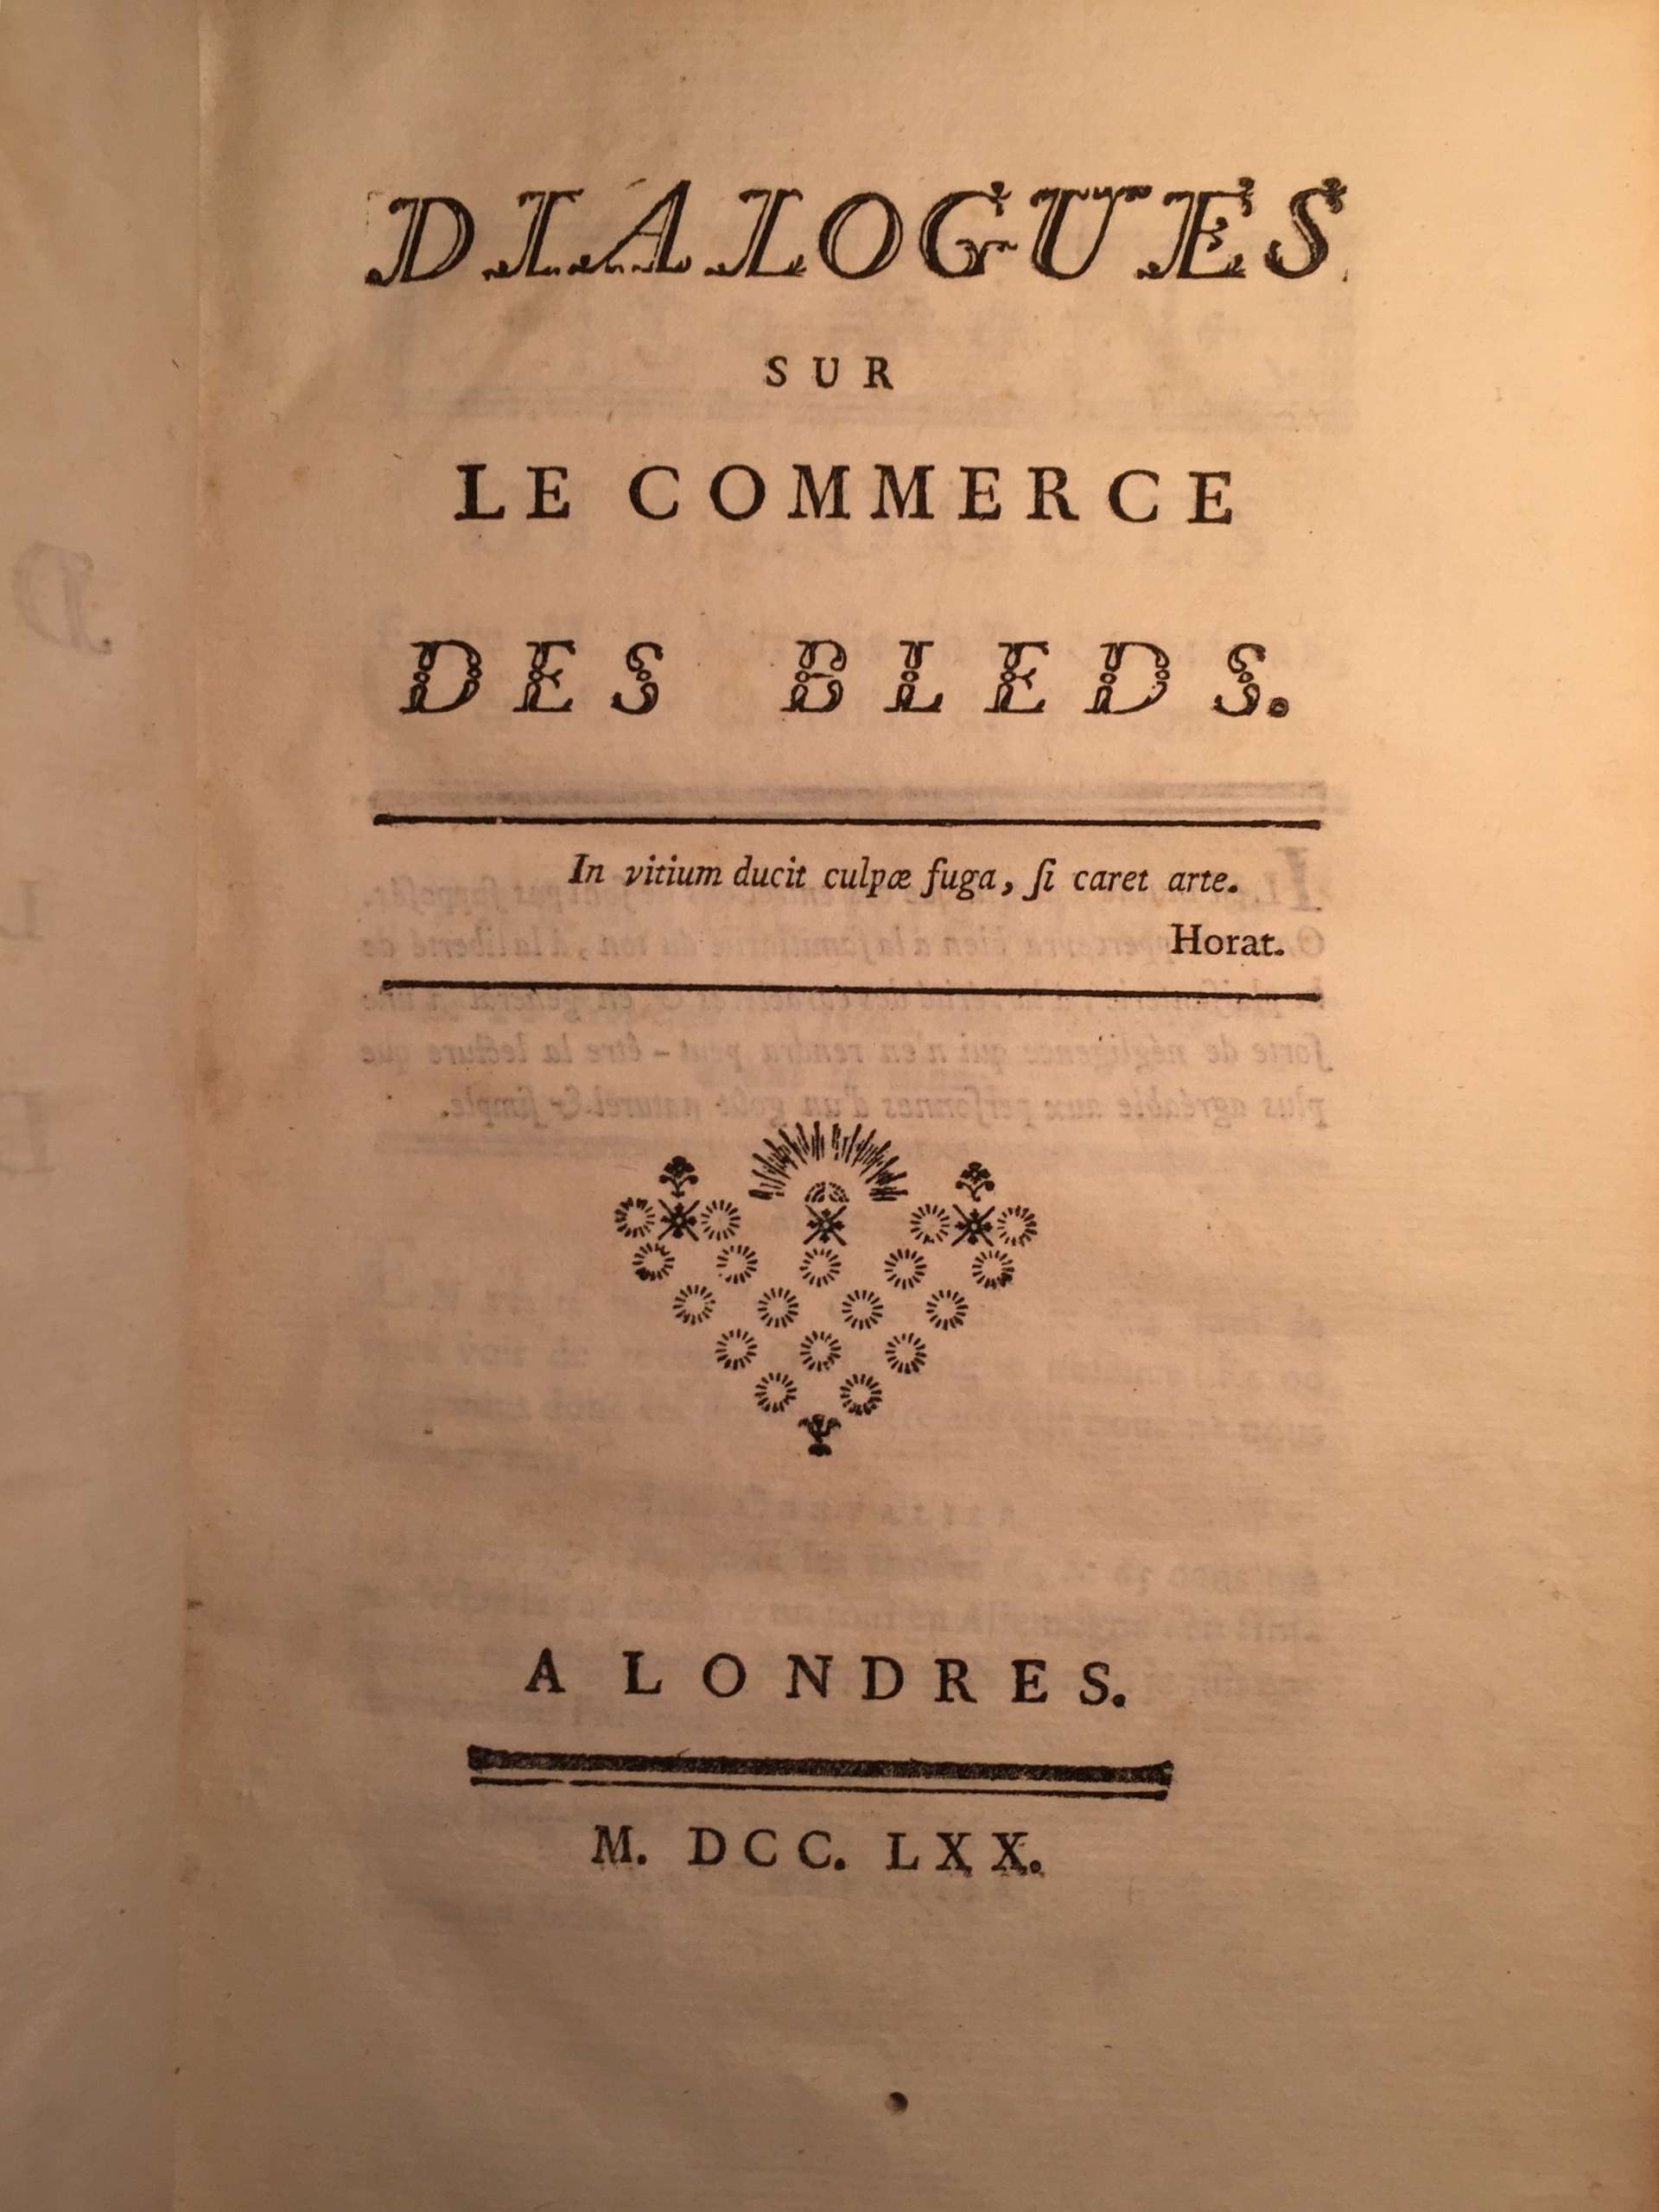 Dialogues sur le commerce des bleds. Ferdinando Galiani, Abbé. Londres, 1770.